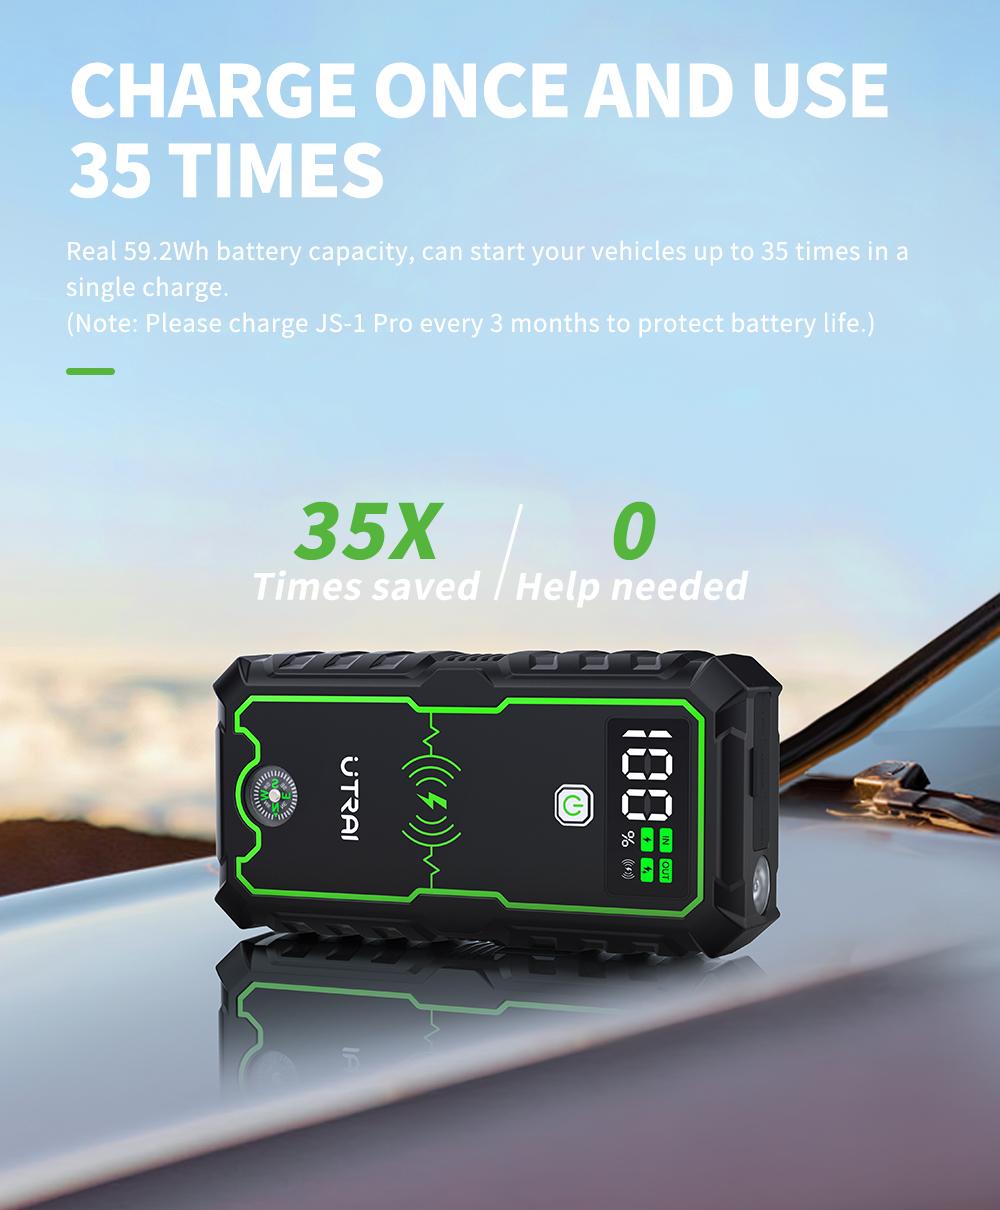 UTRAI-Démarreur de voiture pour diabétique, batterie externe 2500A avec chargeur  sans fil 10W, écran LCD